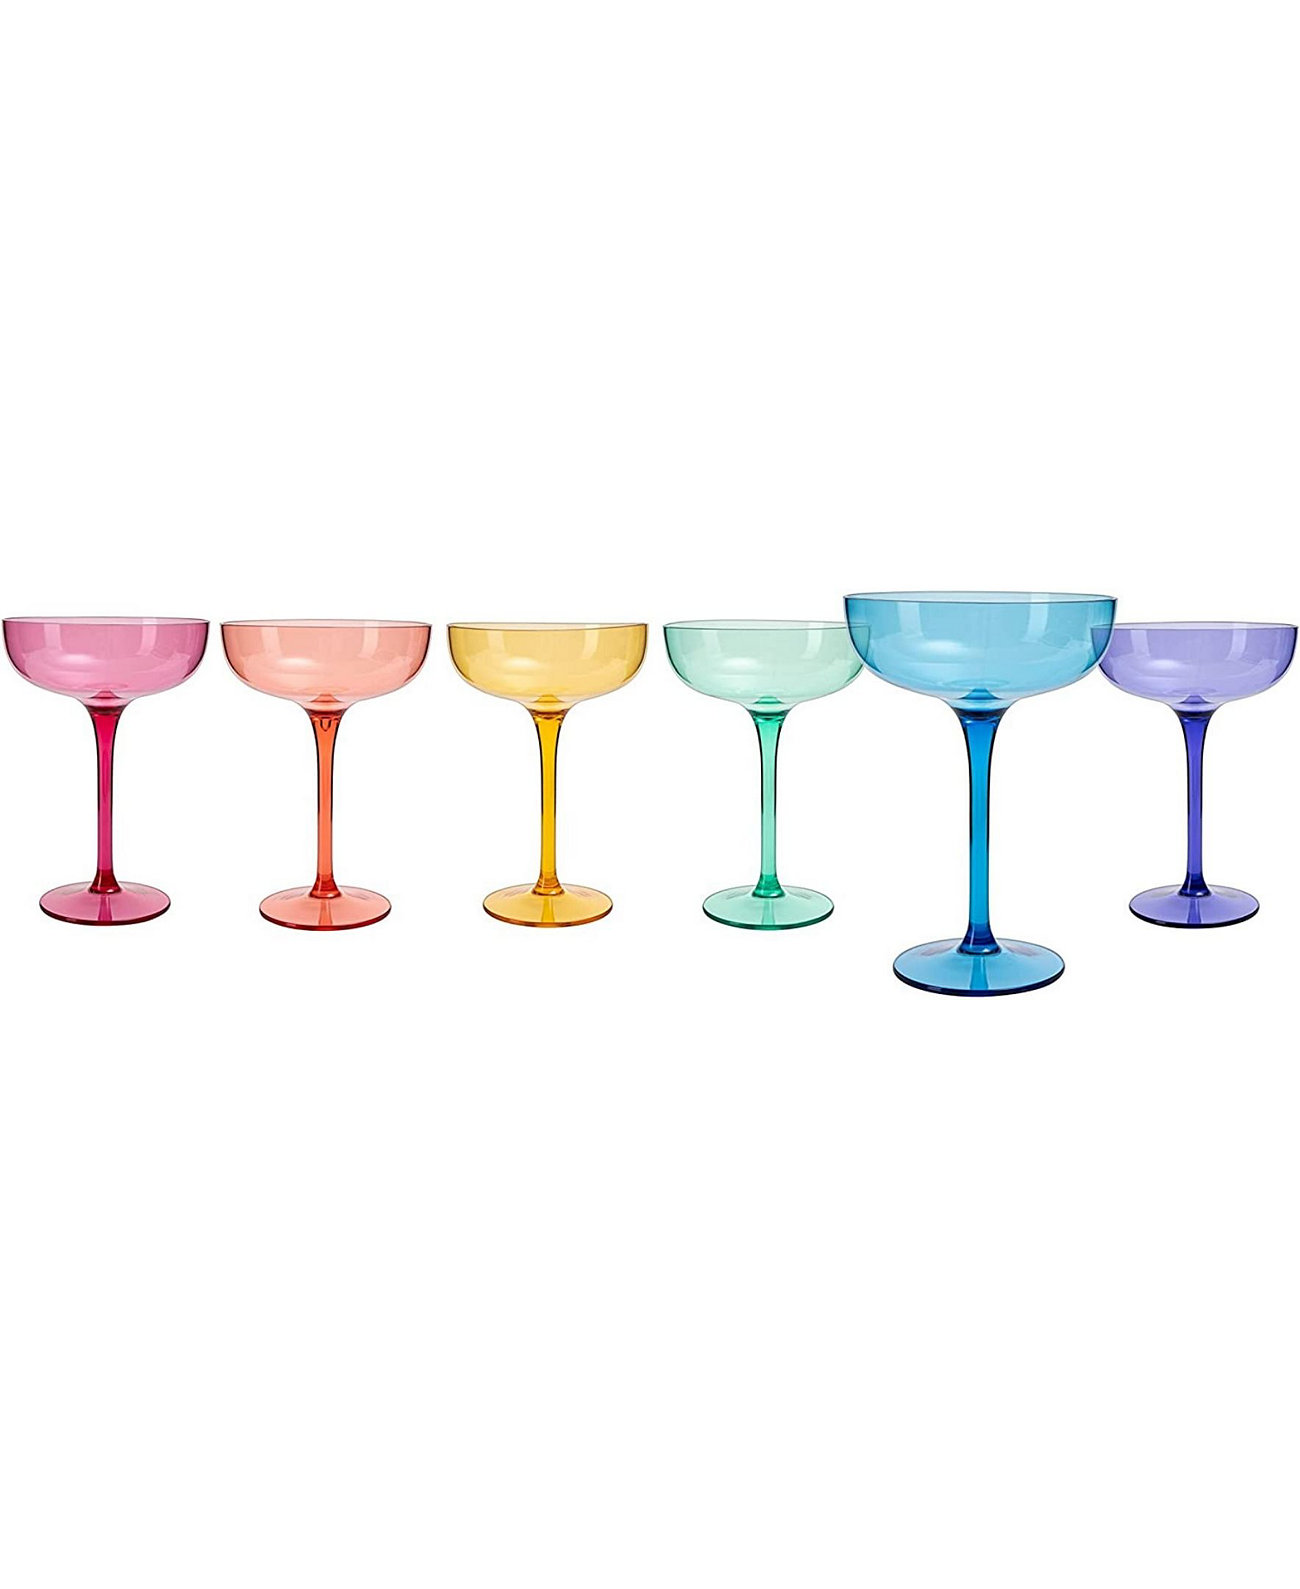 Стеклянные акриловые бокалы для мартини в европейском стиле, набор из 6 шт. The Wine Savant